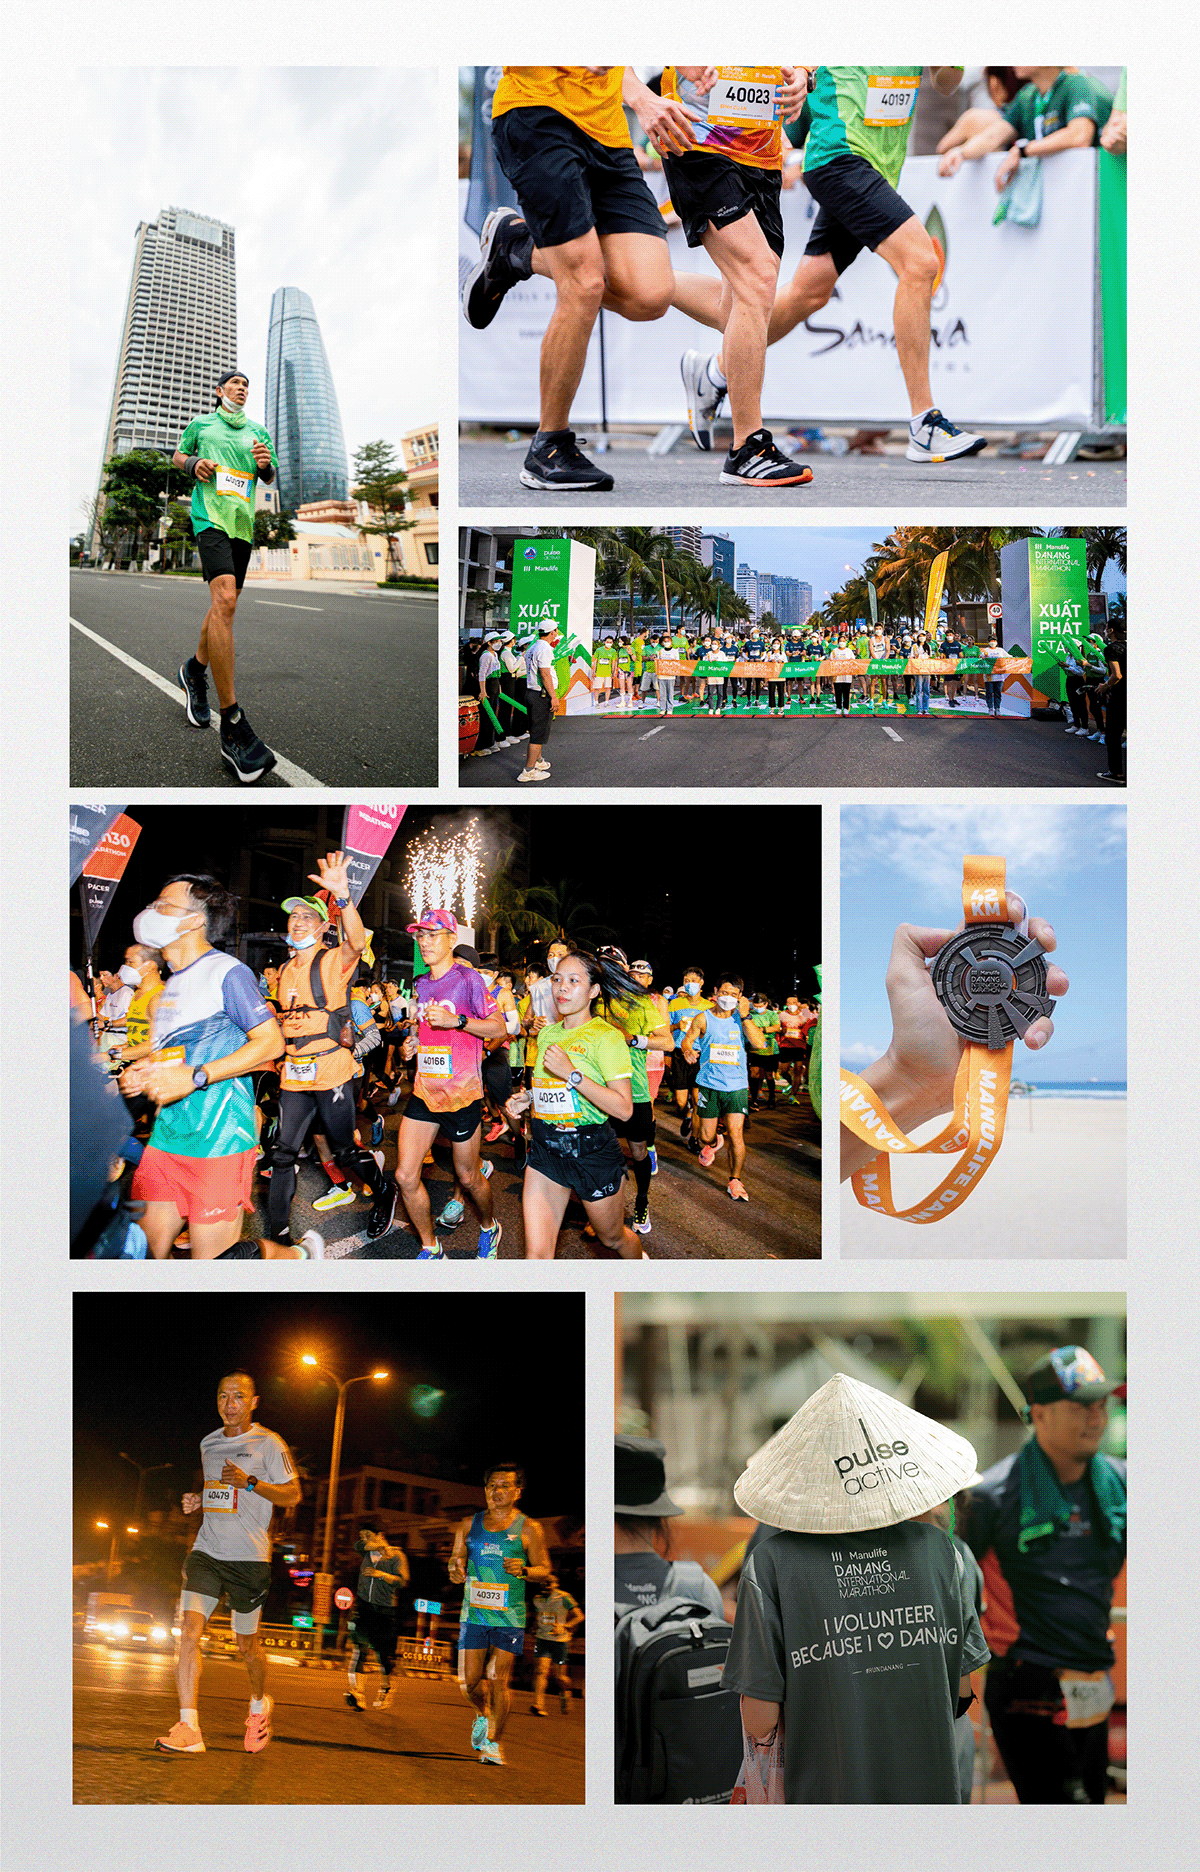 Event Marathon running sport brand identity visual Social media post visual identity